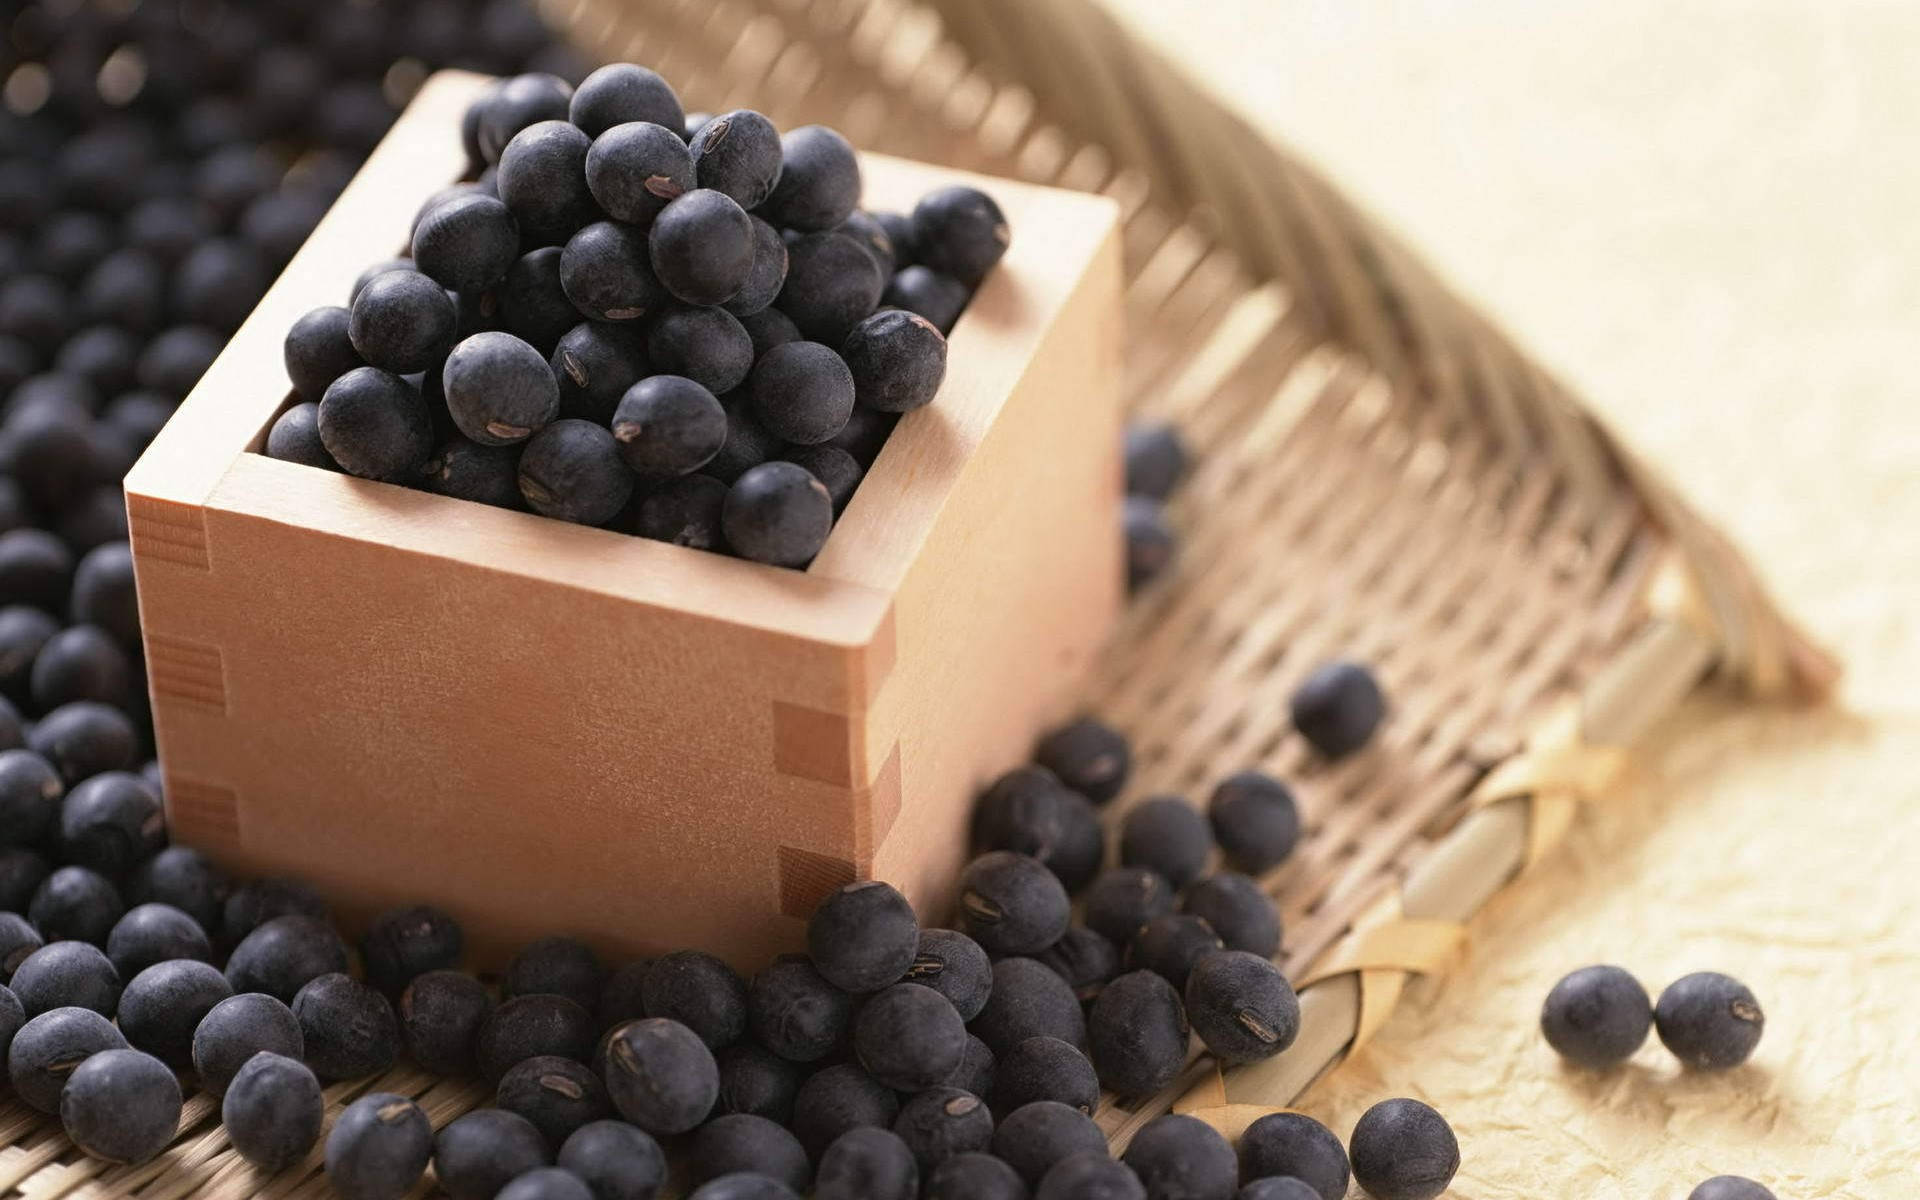 Square Sake Box Of Blueberries